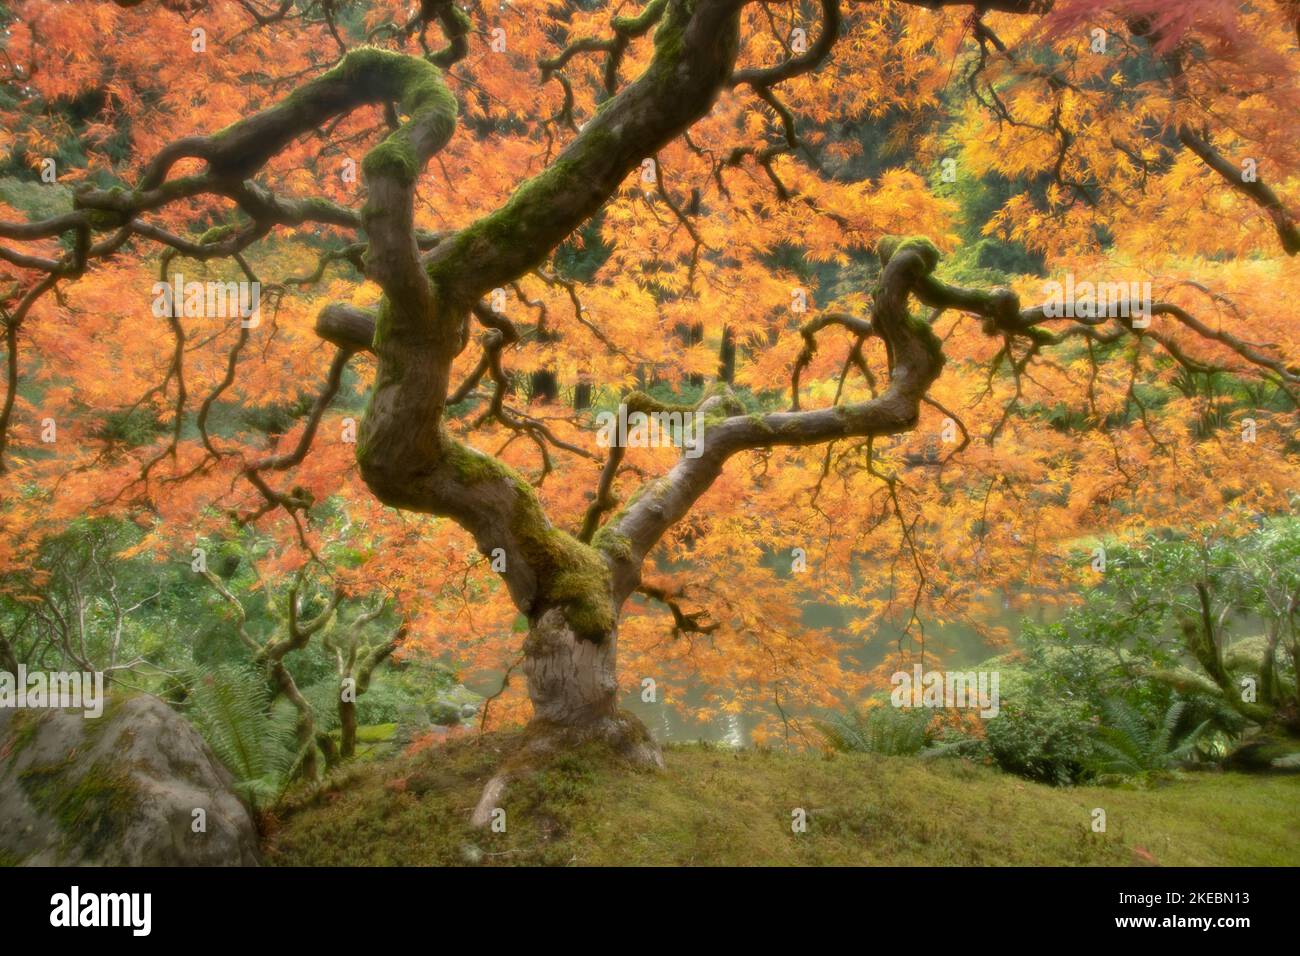 Arce japonés (Acer palmatum), variedad llorona, hojas de otoño, foco suave Foto de stock